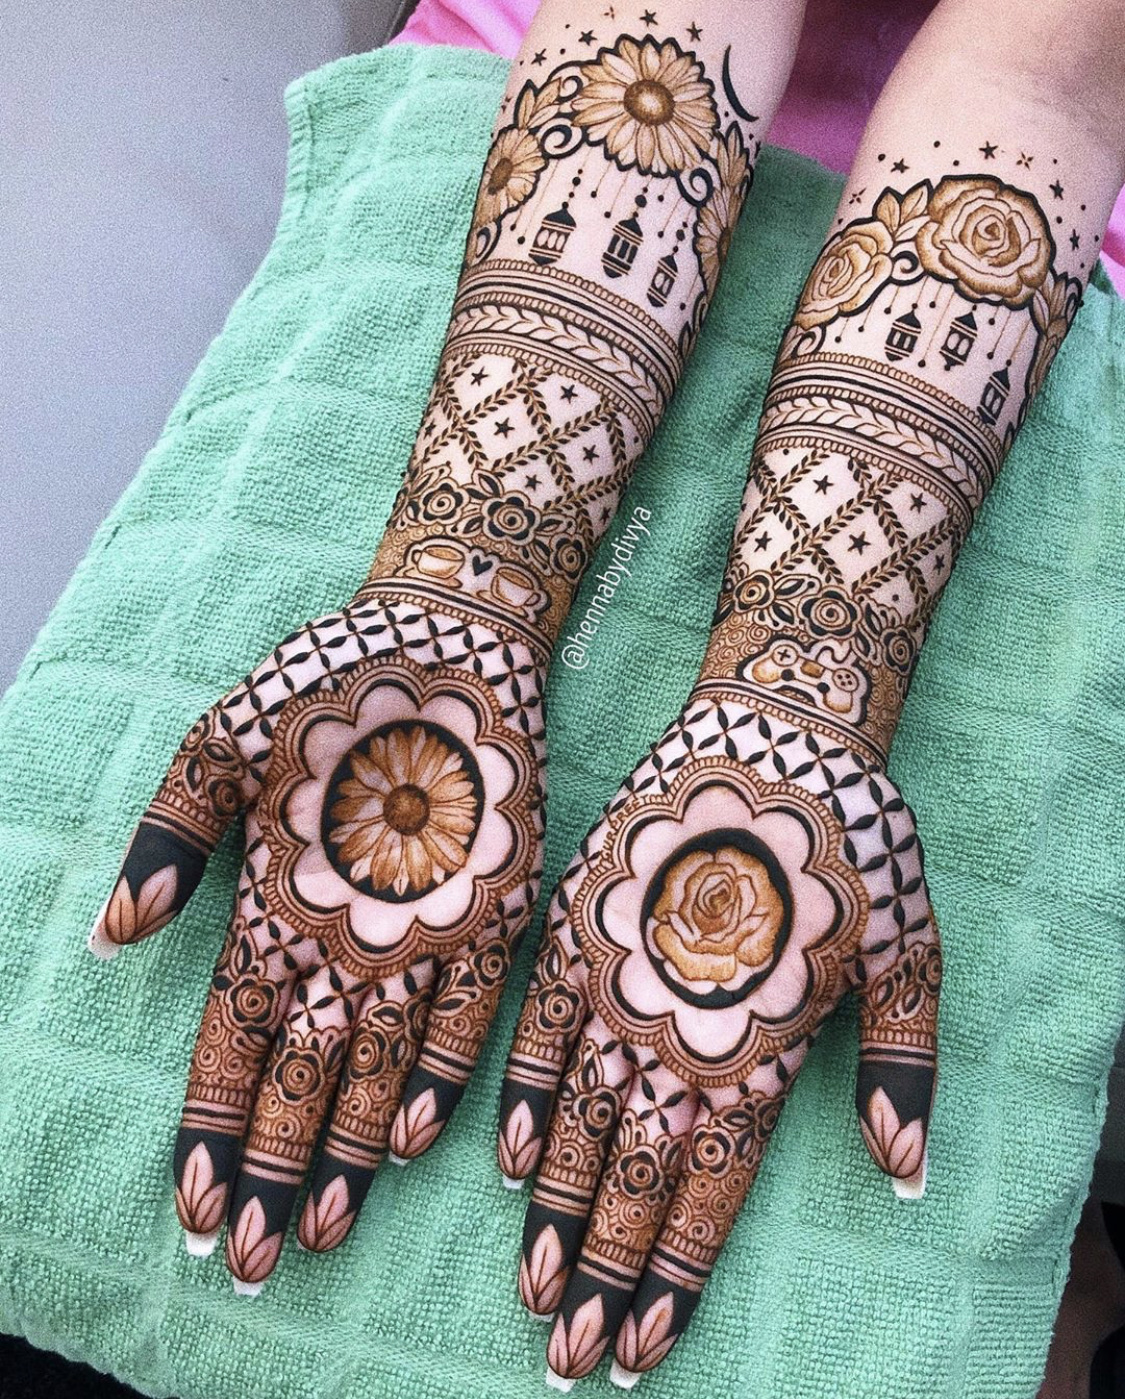 Mehndi Designs For Wedding: वेडिंग सीजन में अपने हाथों की खूबसूरती में  लगाएं चार चांद, देखें सुंदर और आकर्षक मेहंदी डिजाइन | 🛍️ LatestLY हिन्दी